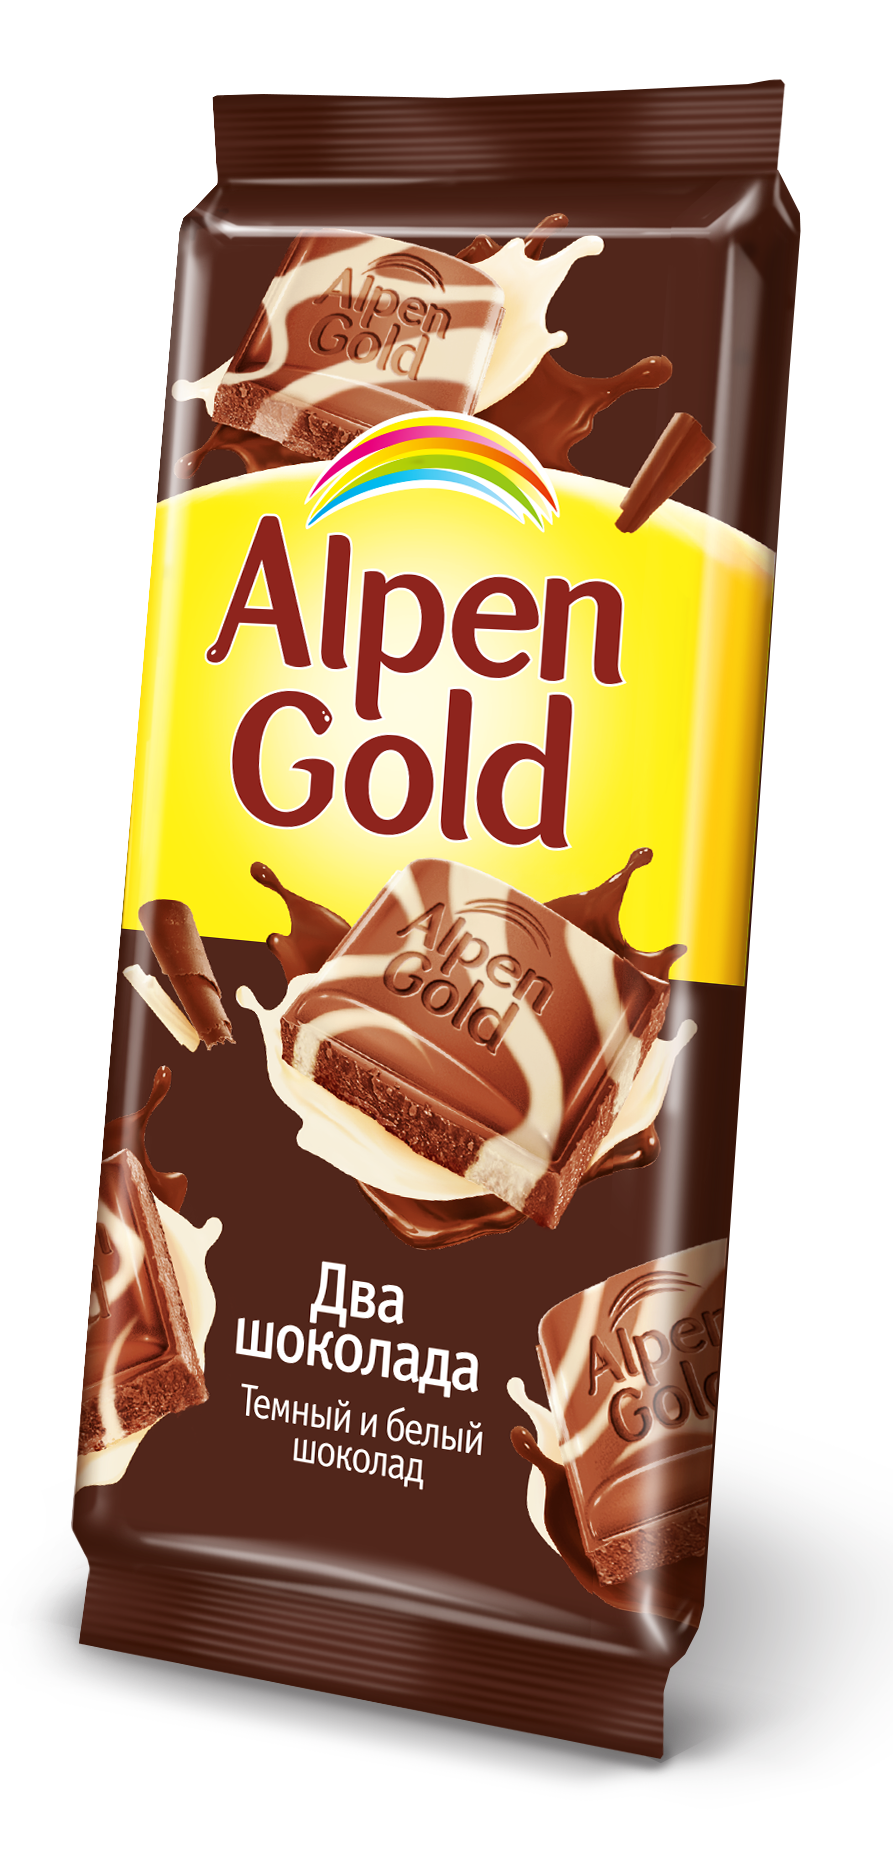 Недорогой шоколад. Альпен Гольд 2 шоколада. Альпен Гольд два шоколада. Плитка шоколада Альпен Гольд. Шоколад Альпен Гольд 2 шоколада.